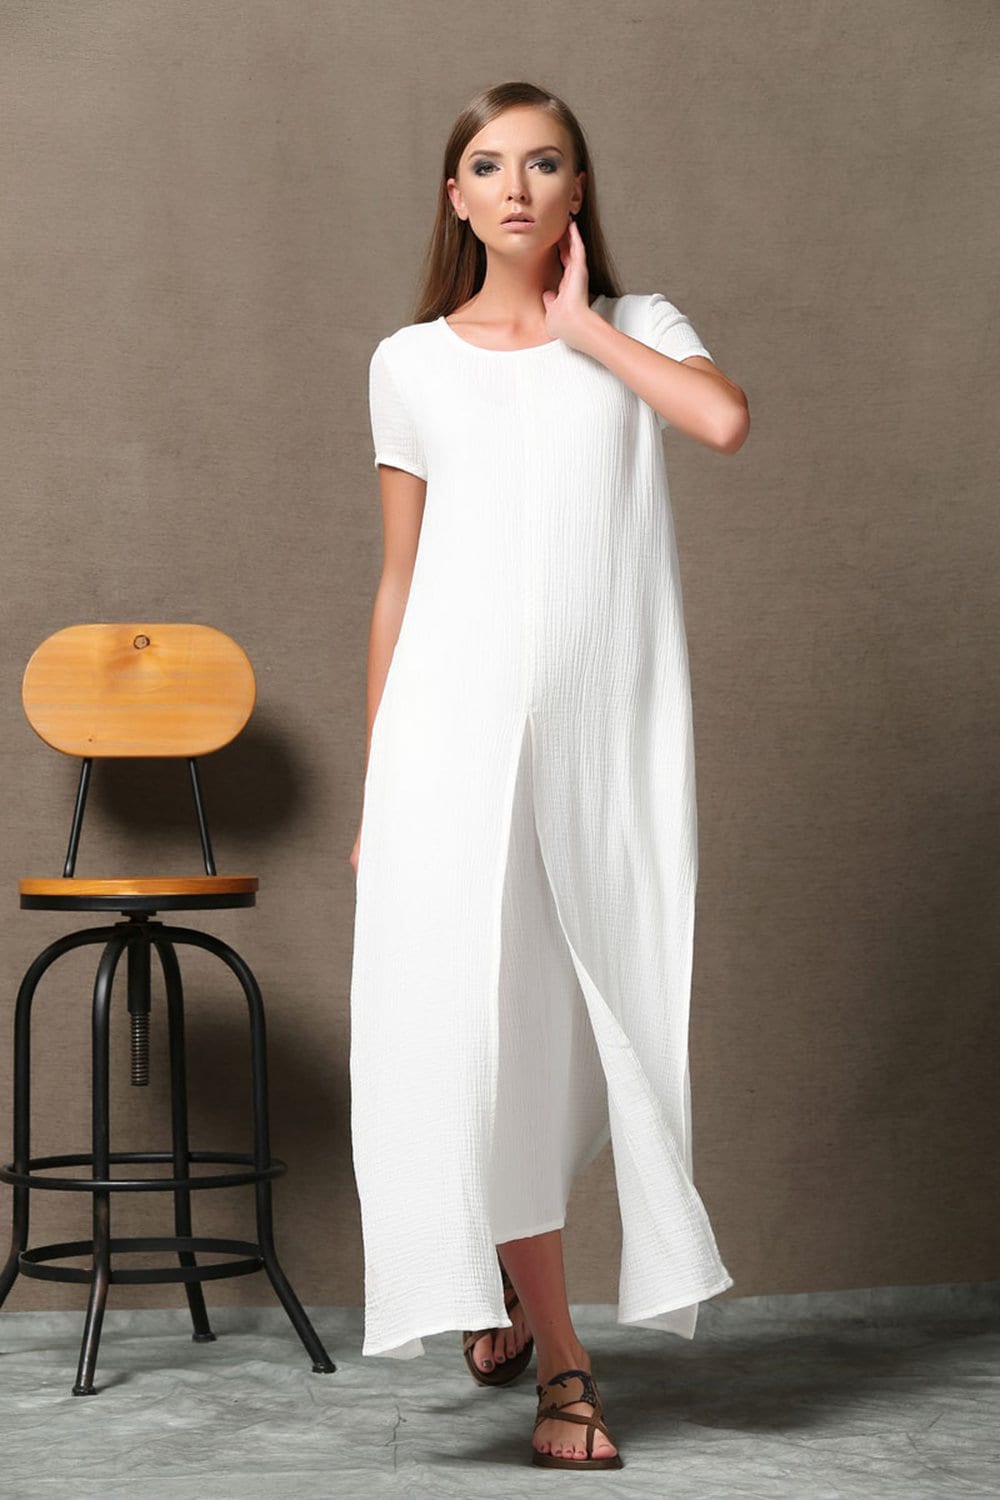 Short Sleeve White Maxi Linen Dress for Women Summer Cotton - Etsy UK